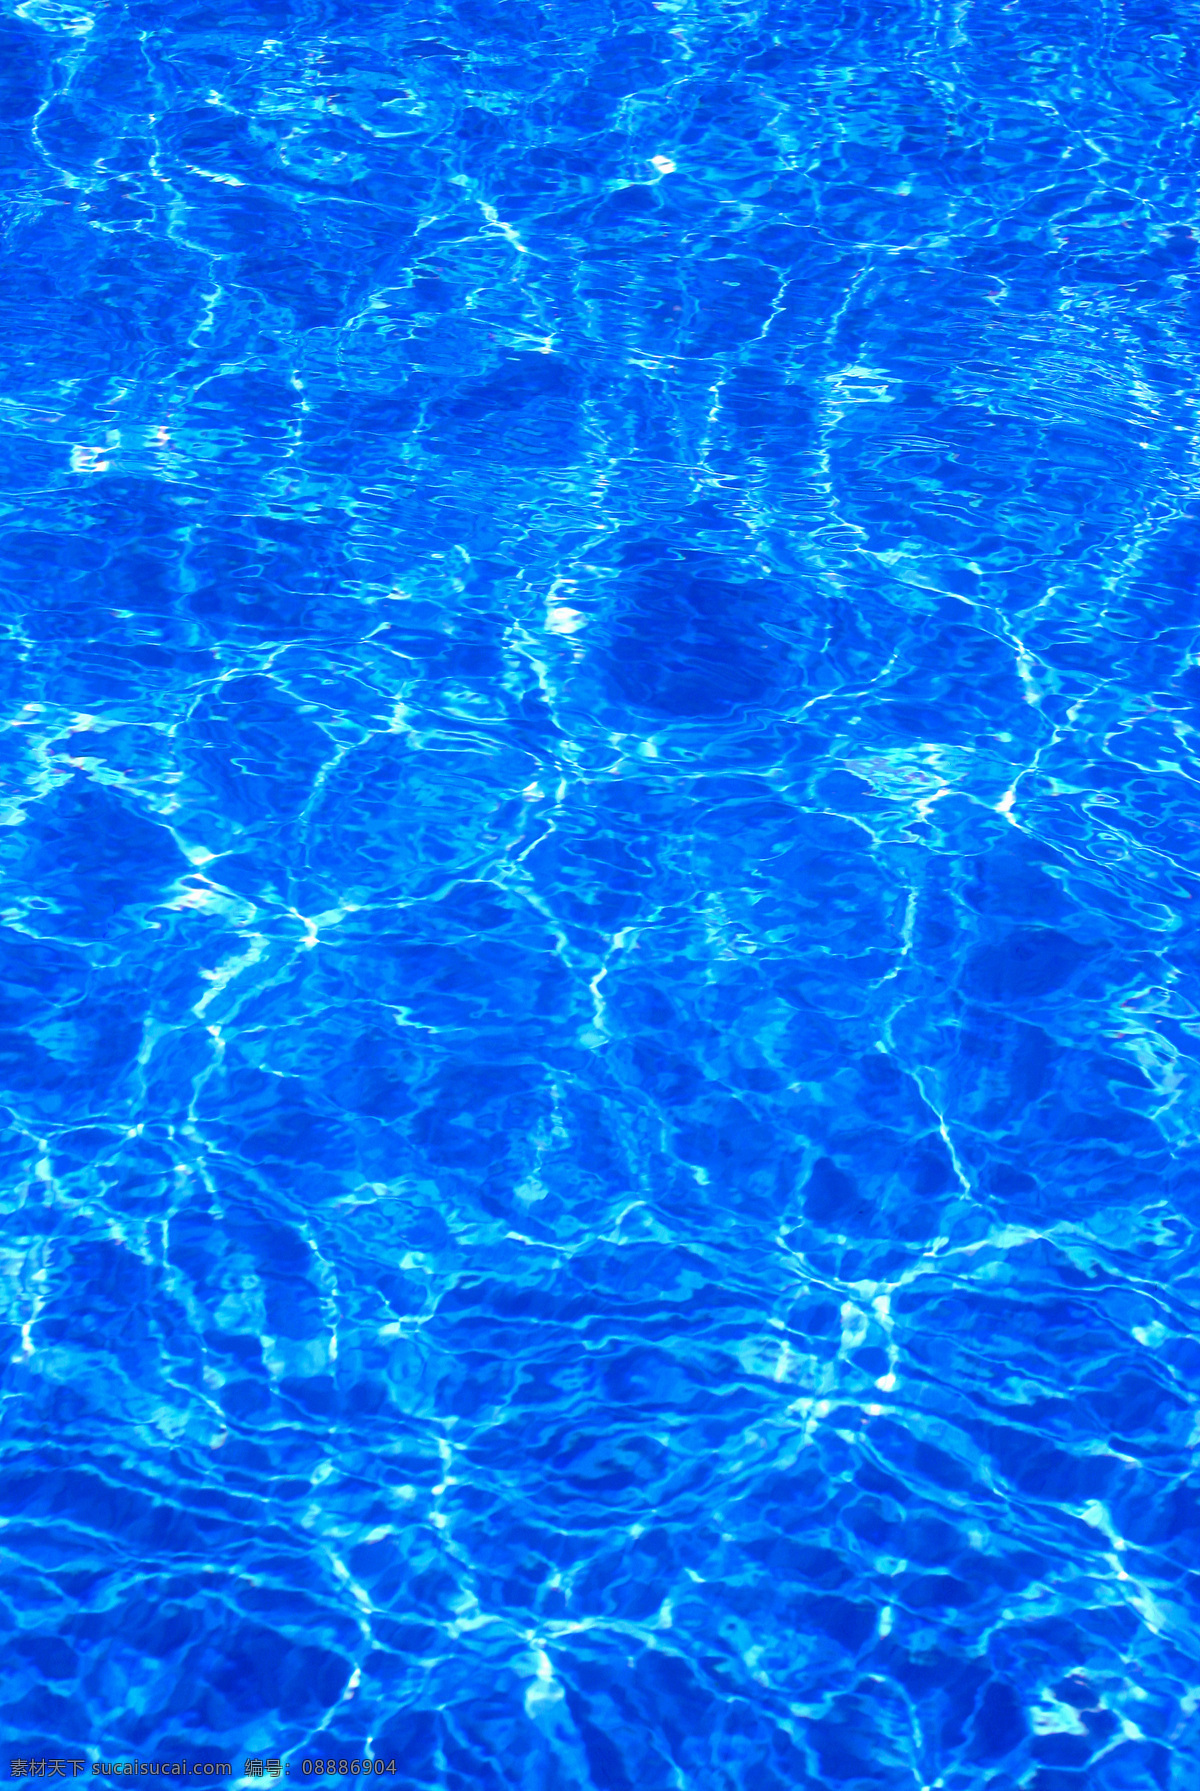 蓝色 海洋 水 纹 背景 水波 泳池的水 高清图片 创意图片 底纹边框 背景底纹